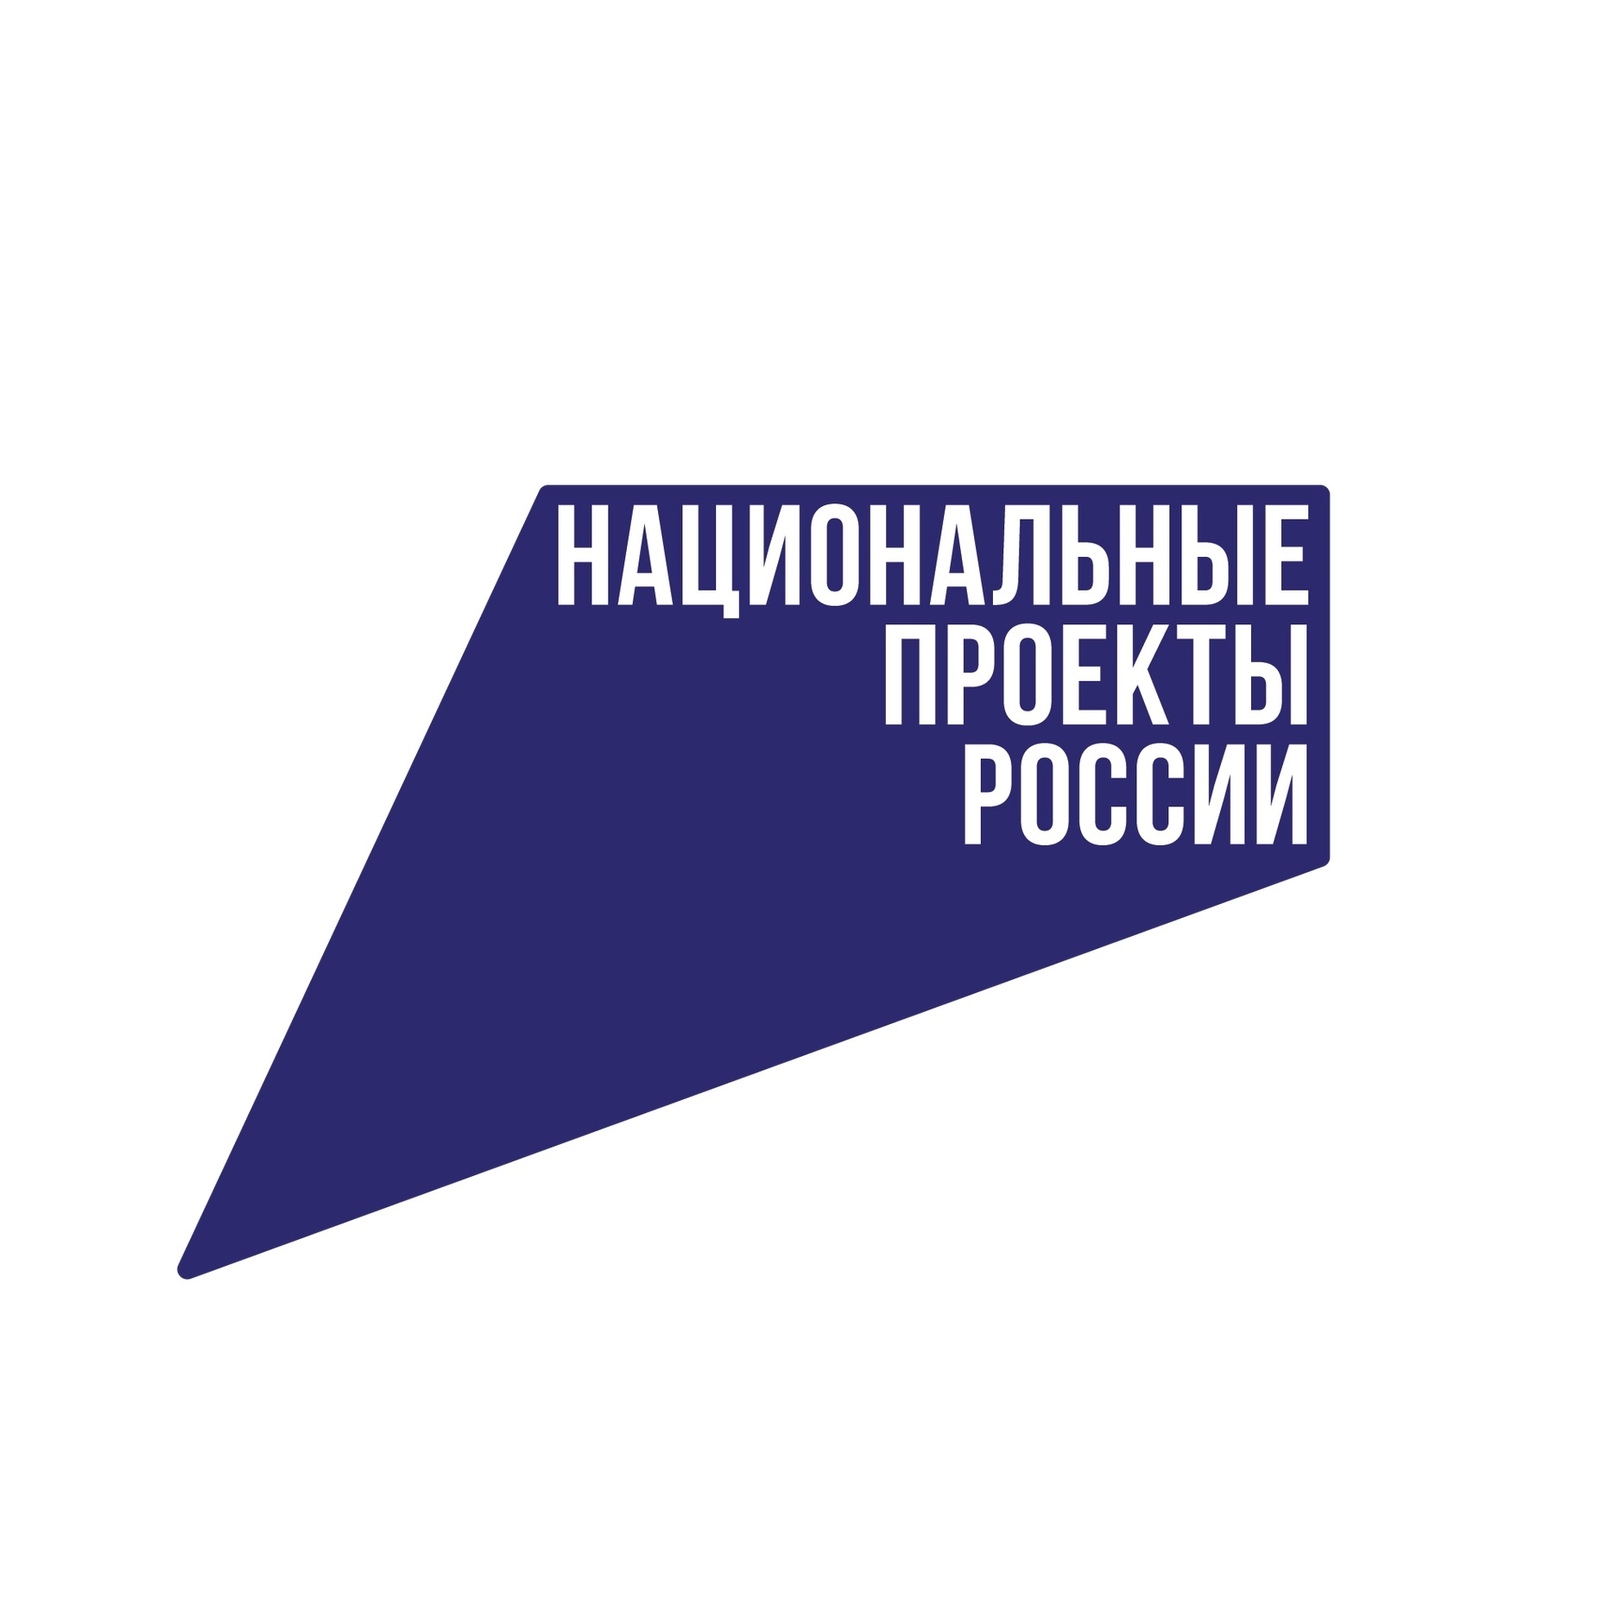 Башкирия в рамках нацпроекта «Экология» привлекла 1,5 млрд рублей из федерального бюджета